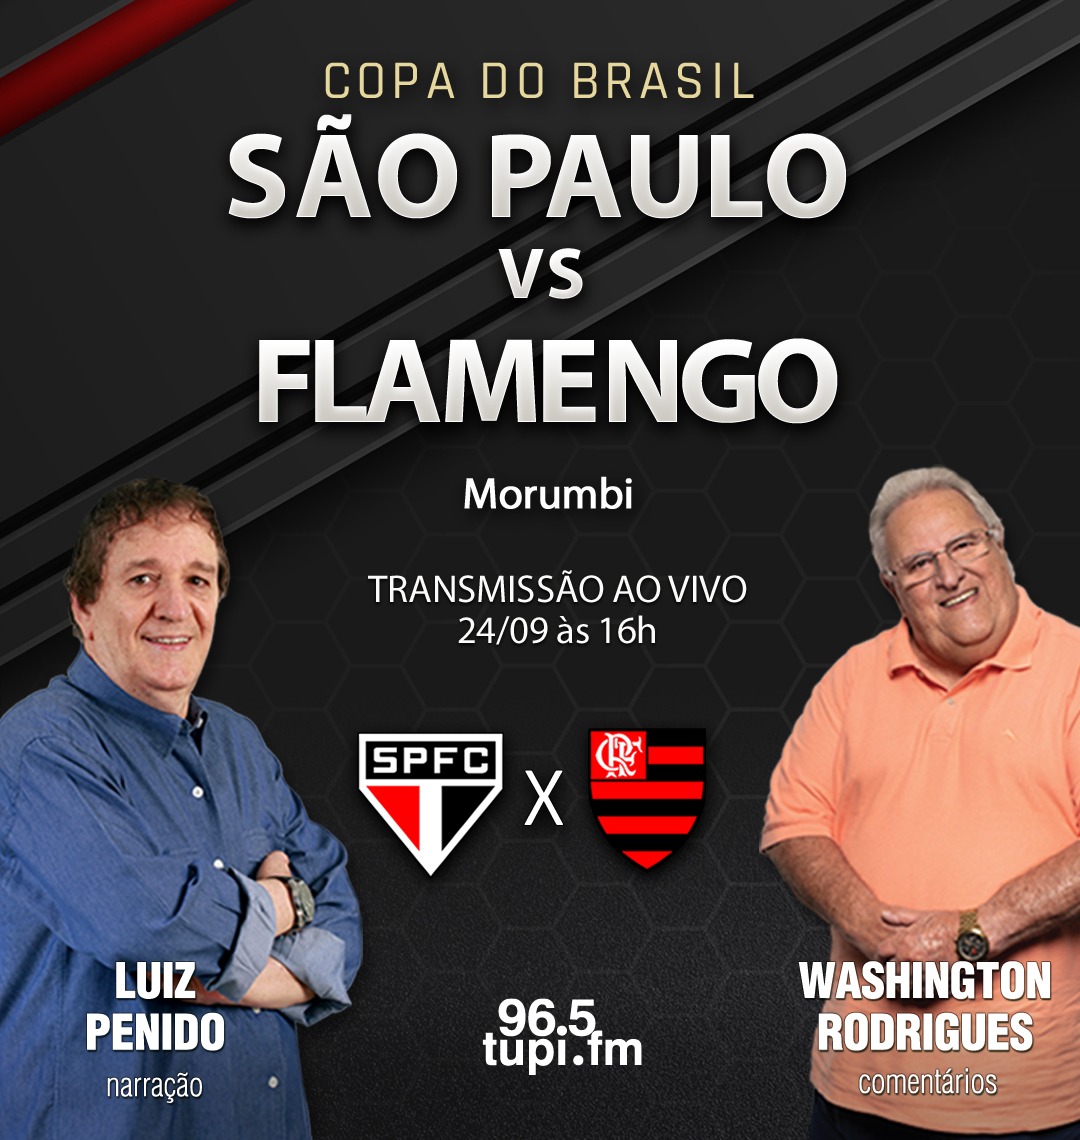 AO VIVO: FLAMENGO X SÃO PAULO - FINAL DA COPA DO BRASIL 2023 DIRETO DO  MARACANÃ